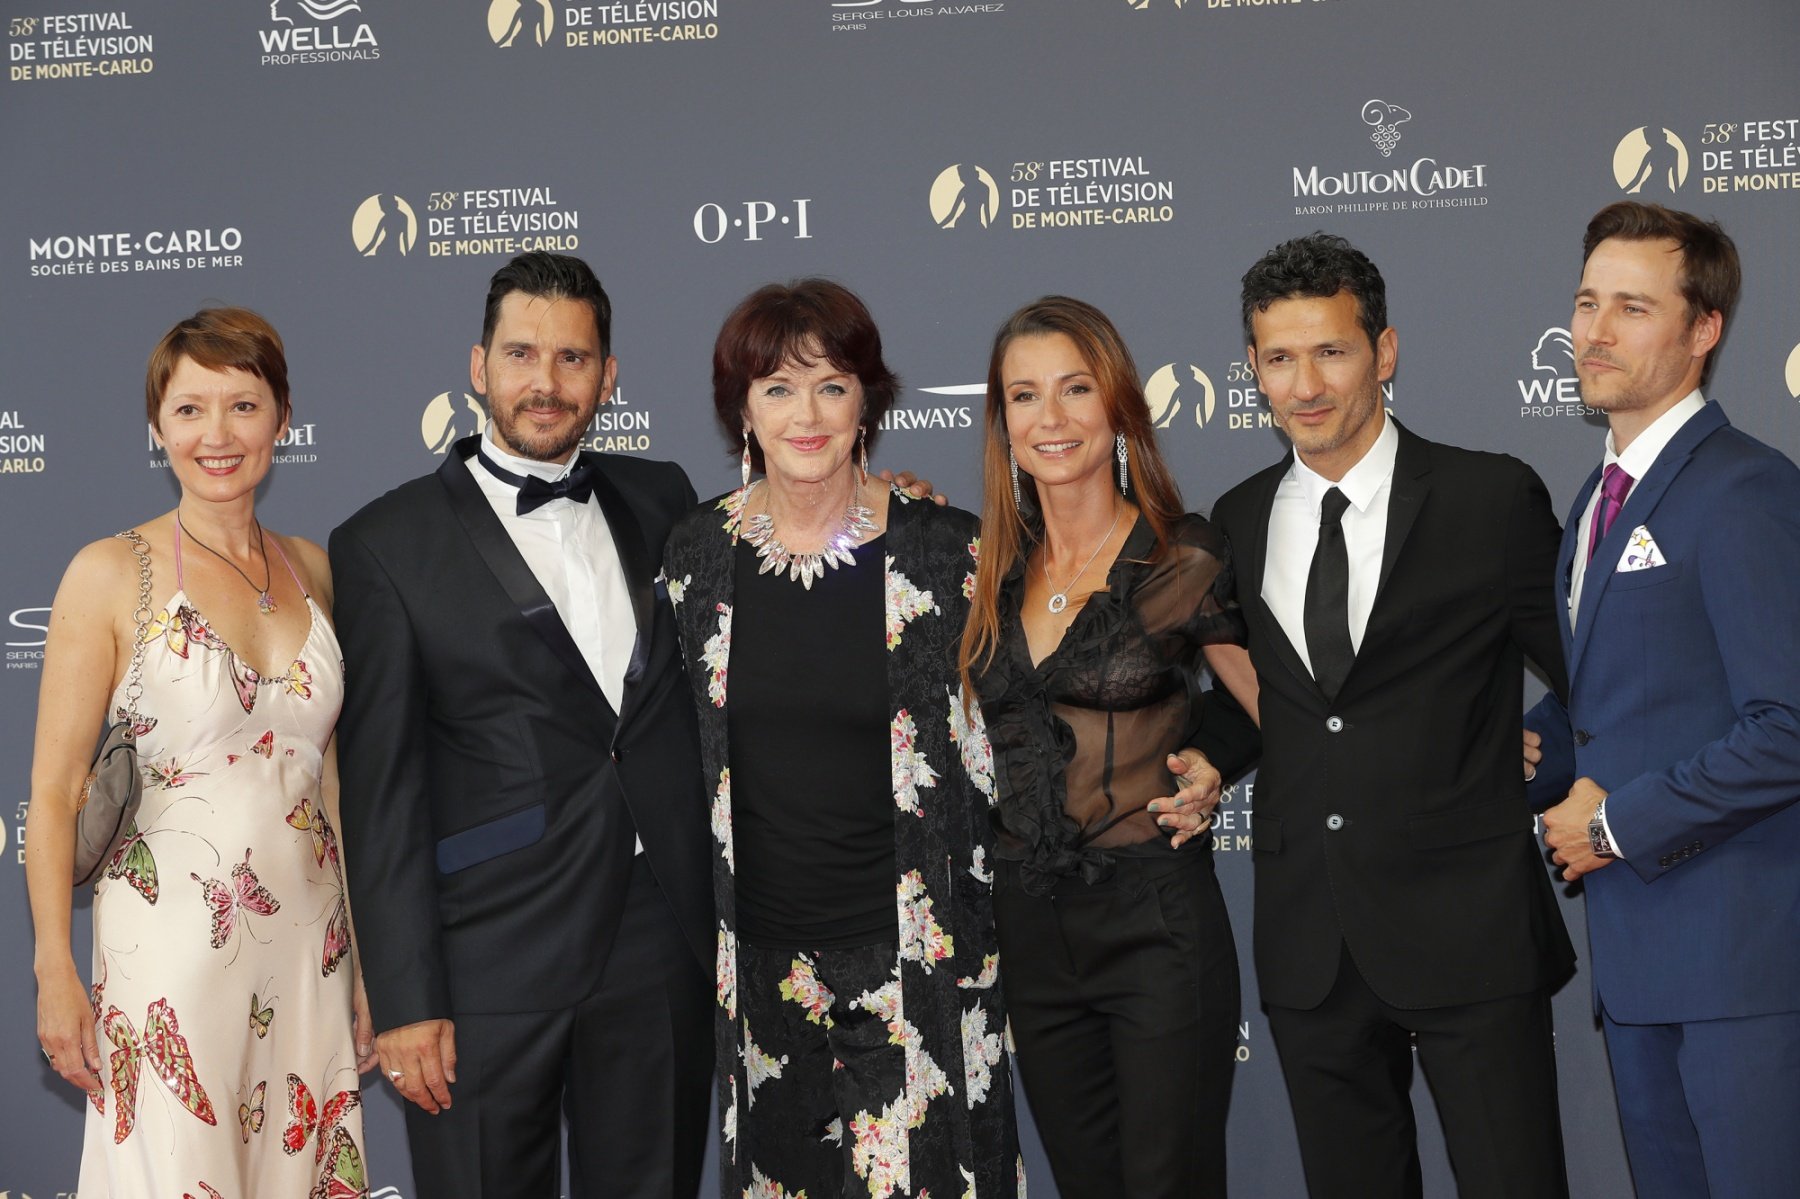 Cécile Caillaud, Alexandre Thibault, Anny Duperey, Jennifer Lauret, Kamel Belghazi et Karl E. Landler lors du Festival de Télévision de Monte-Carlo à Monaco, le 15 juin 2018.